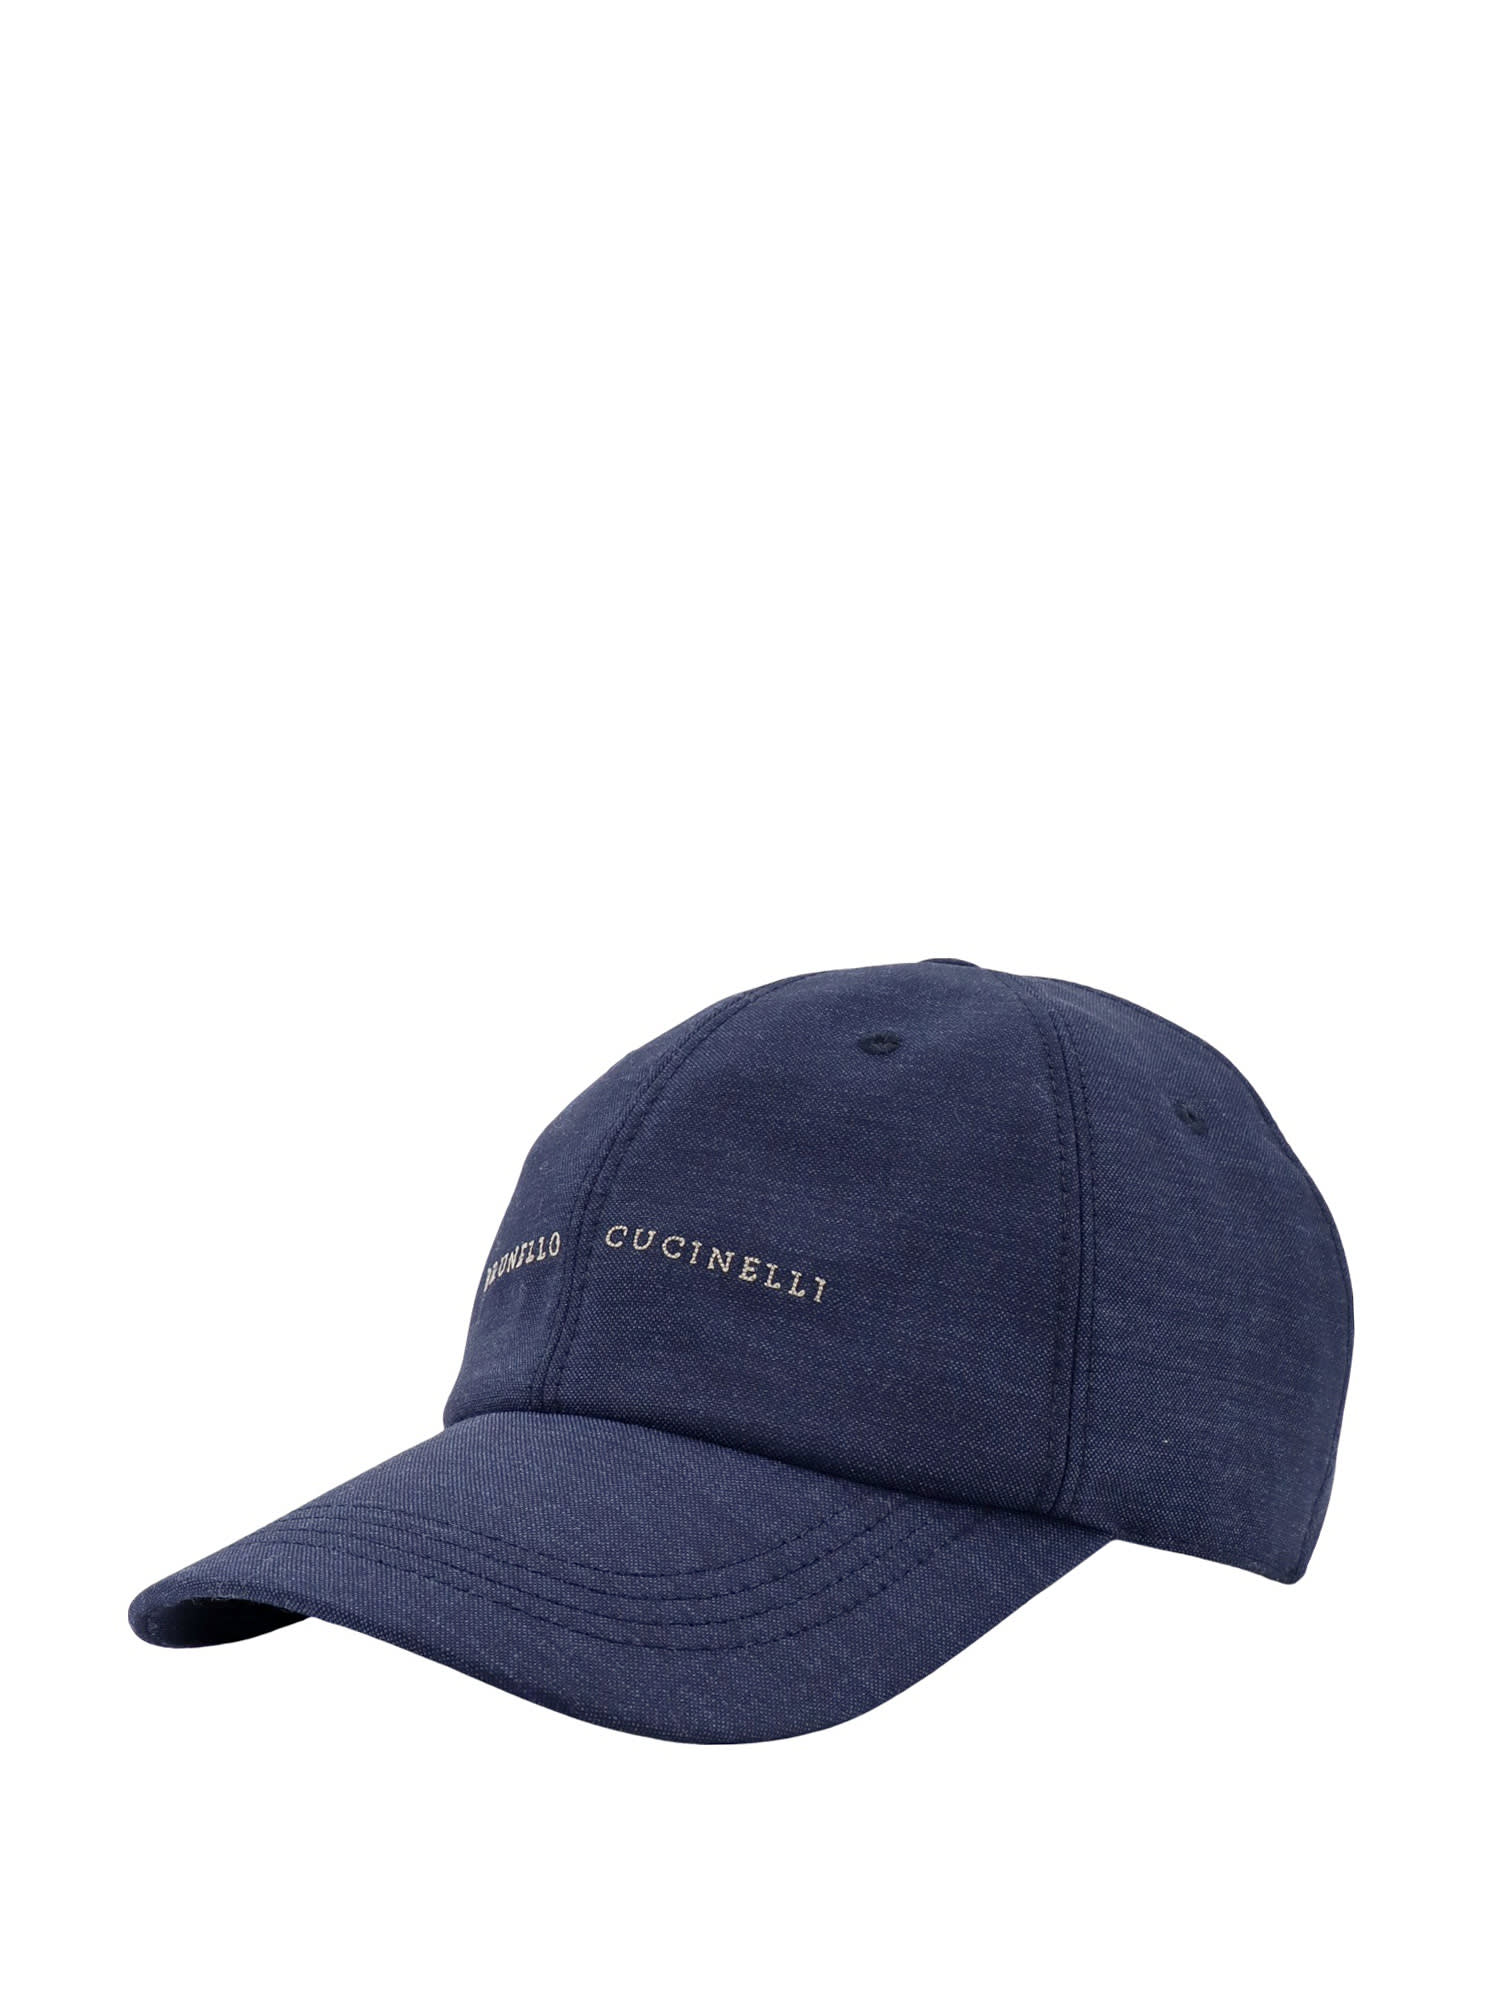 Shop Brunello Cucinelli Hat In Blue